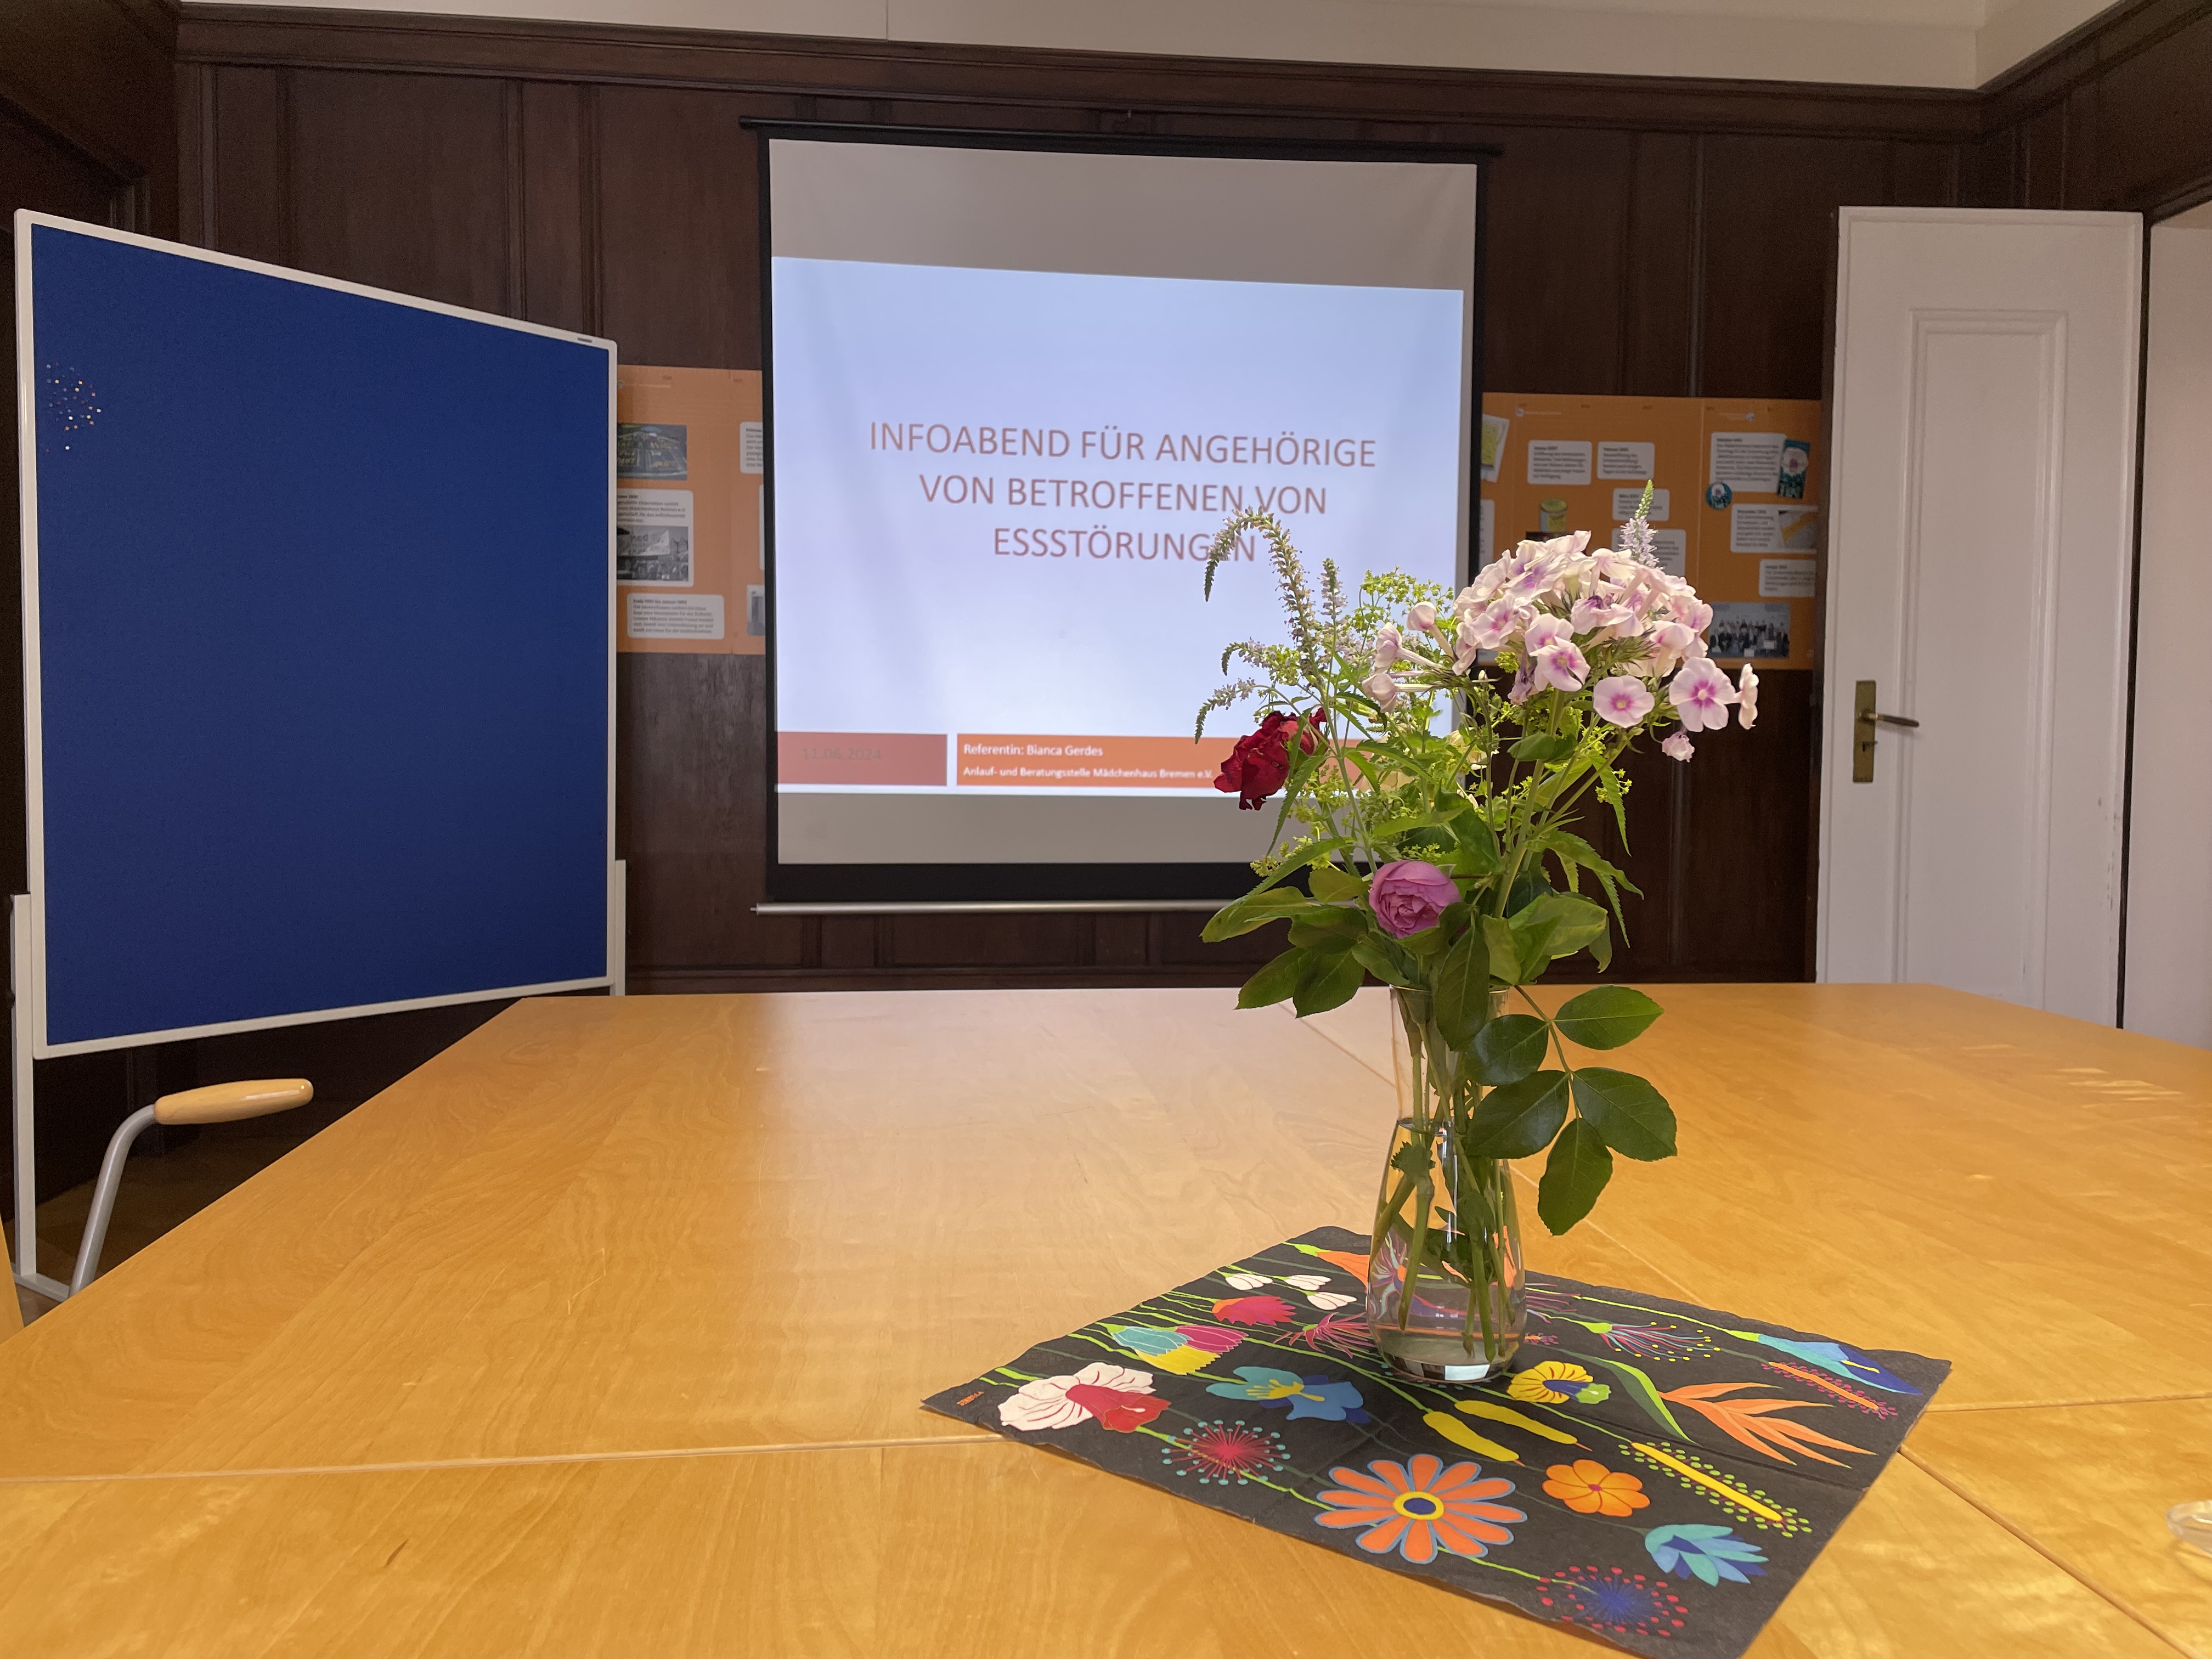 Auf dem Bild ist ein Tisch mit Blumen abgebildet. Im Hintergrund hängt eine Leinwand mit dem Titel: "Infoabend für Angehörige von Betroffenen von Essstörungen".